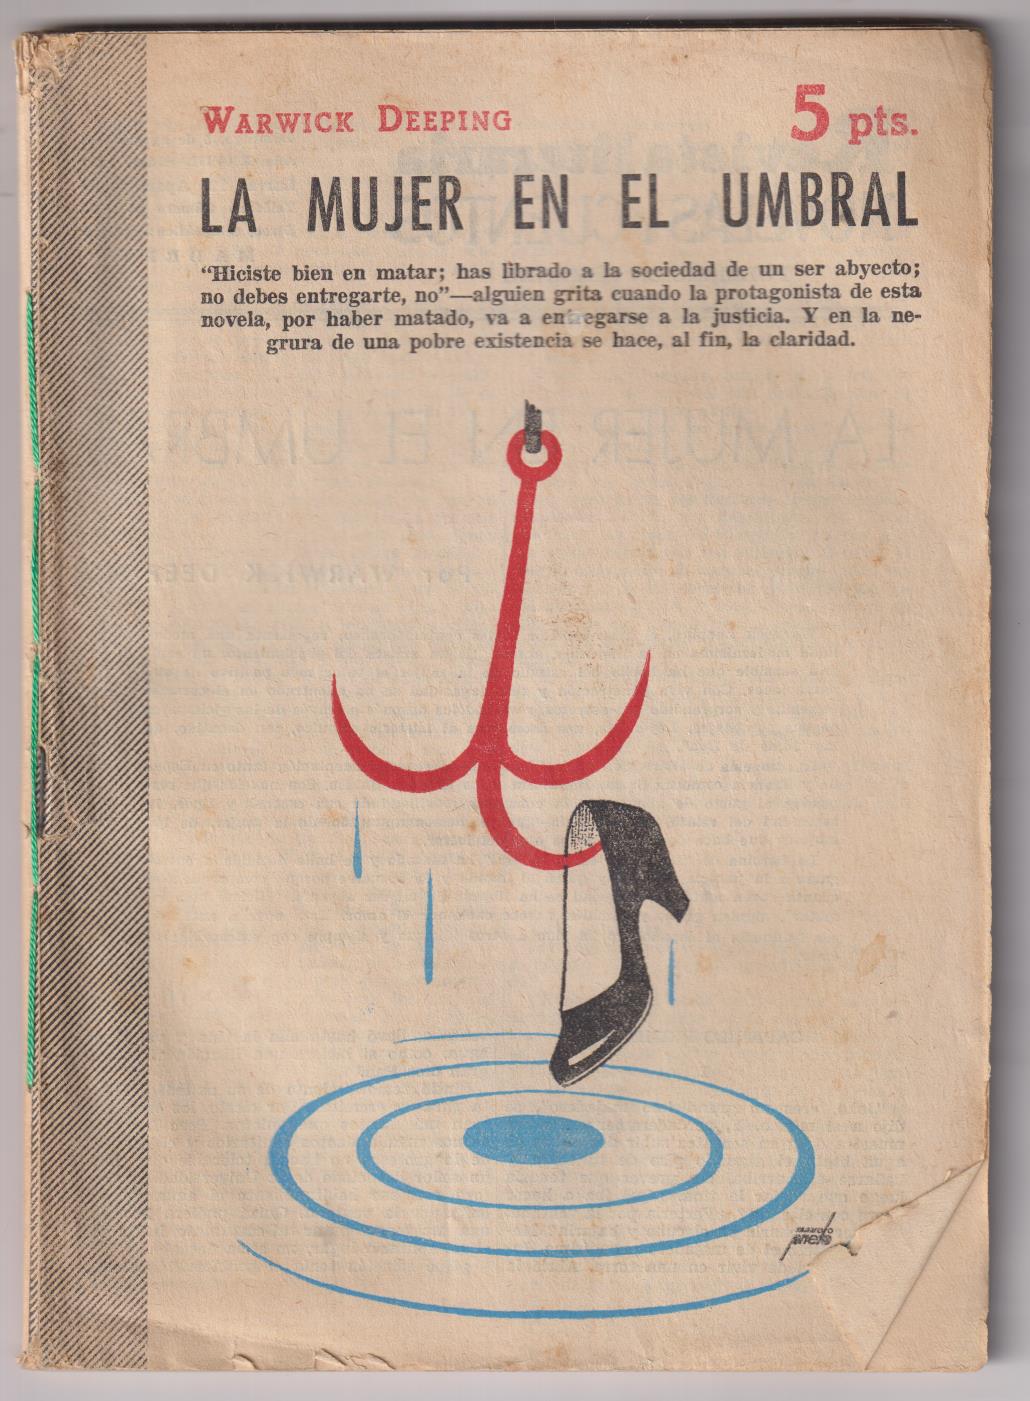 La Revista Literaria Novelas y Cuentos nº 1317. la mujer en el umbral por W. Deeping, 1959